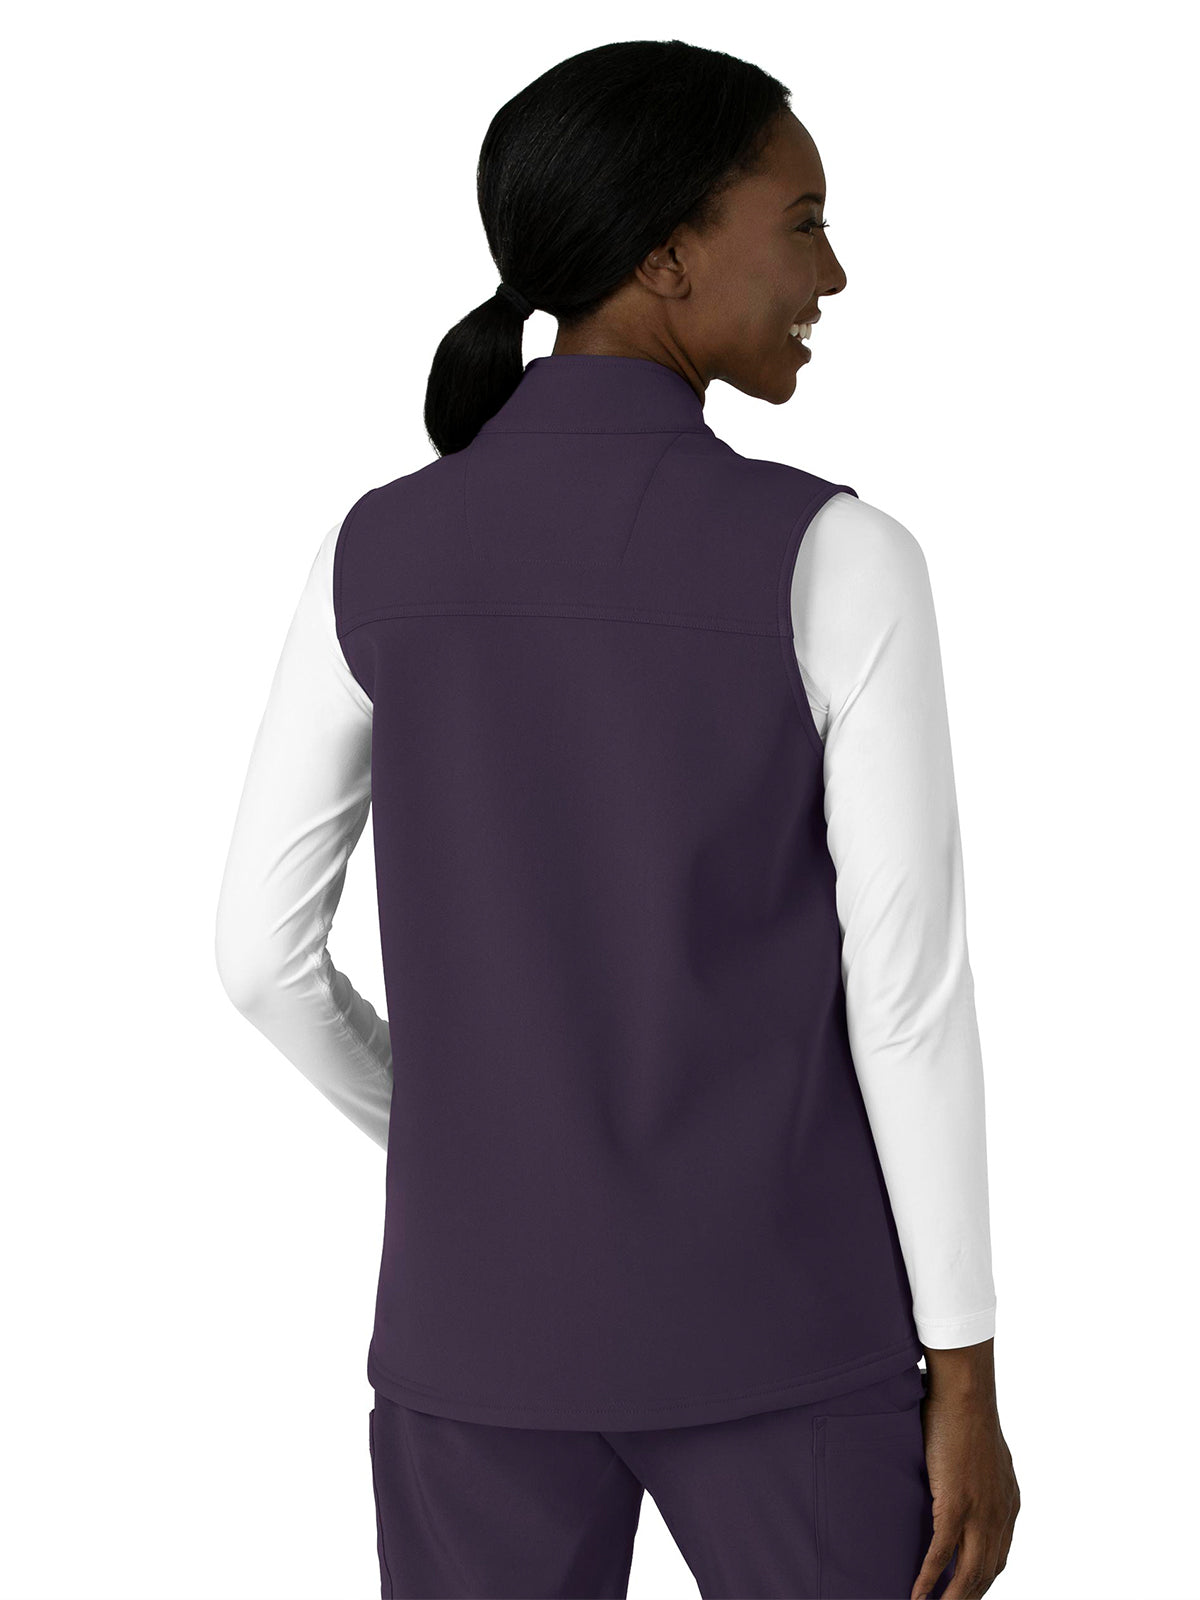 Women's Bonded Fleece Vest - C83023 - Black Plum